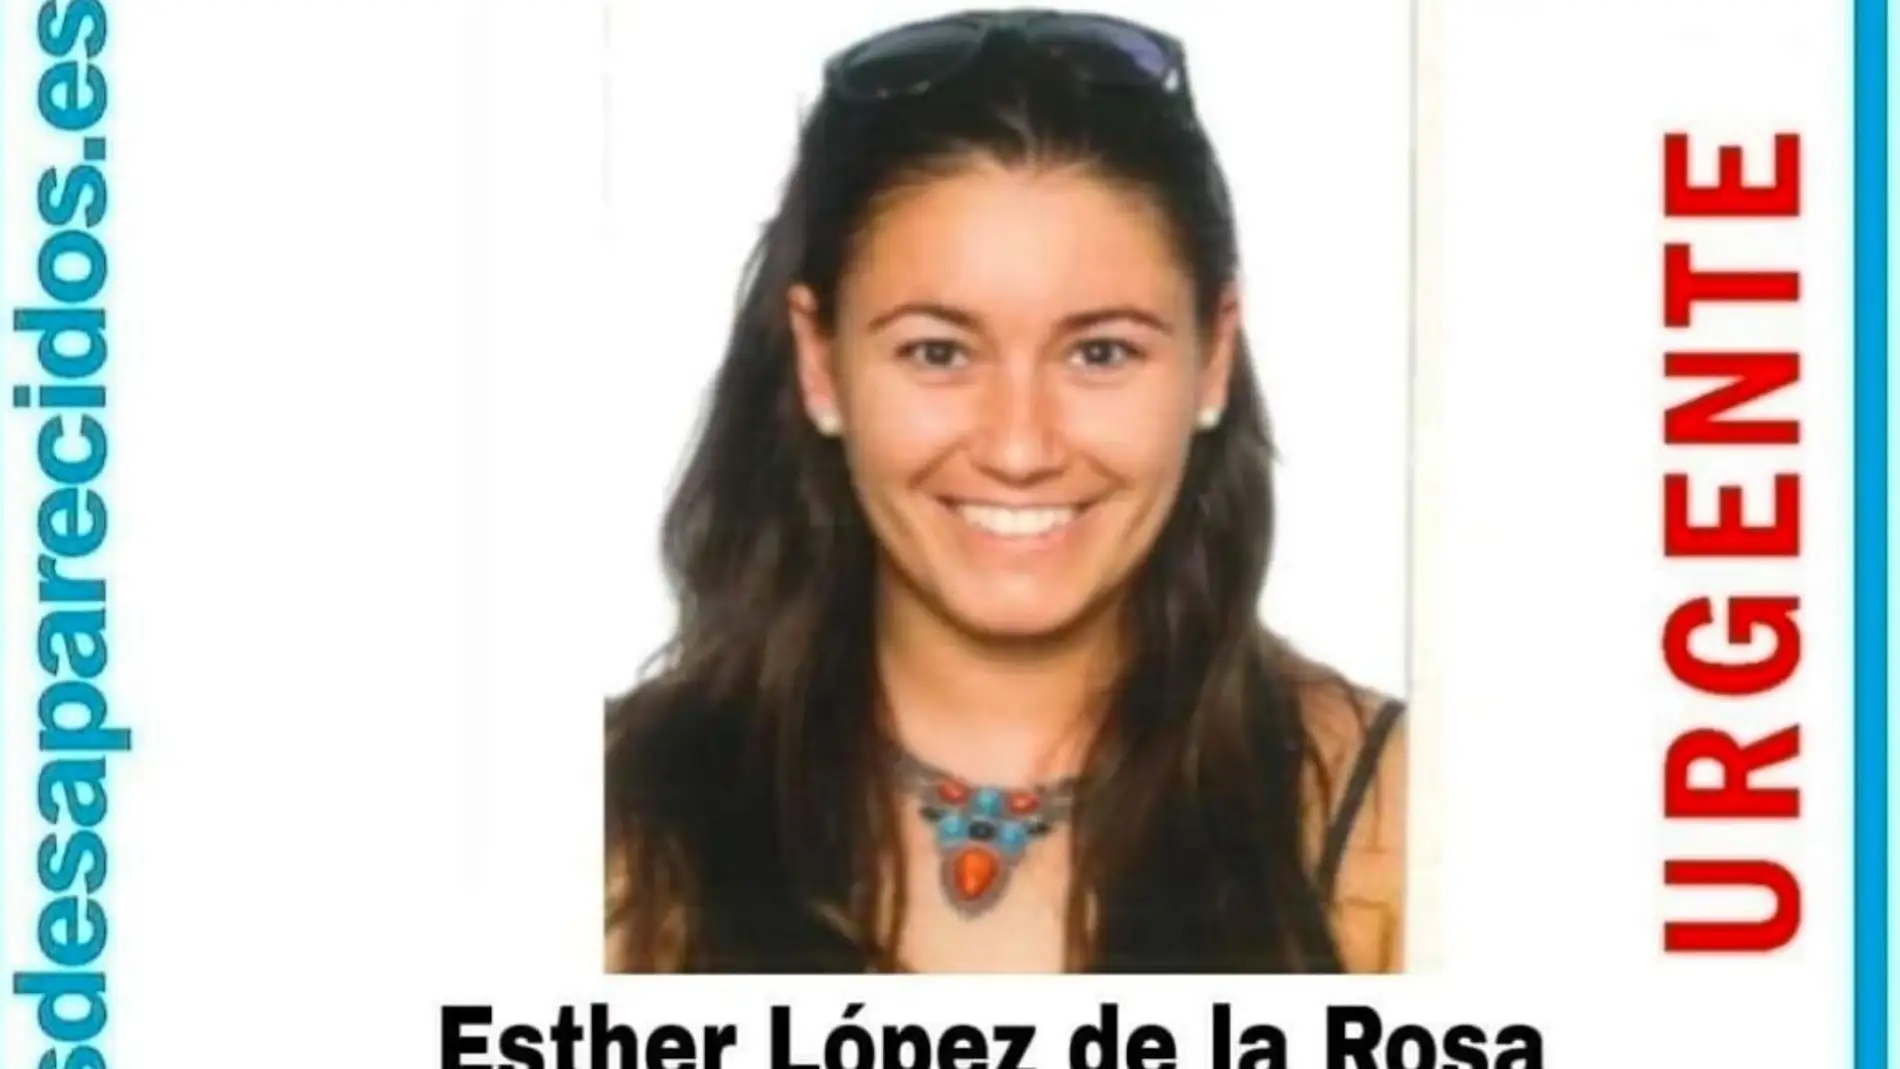 Esther López, la joven muerta en Valladolid. / SOS Desaparecidos